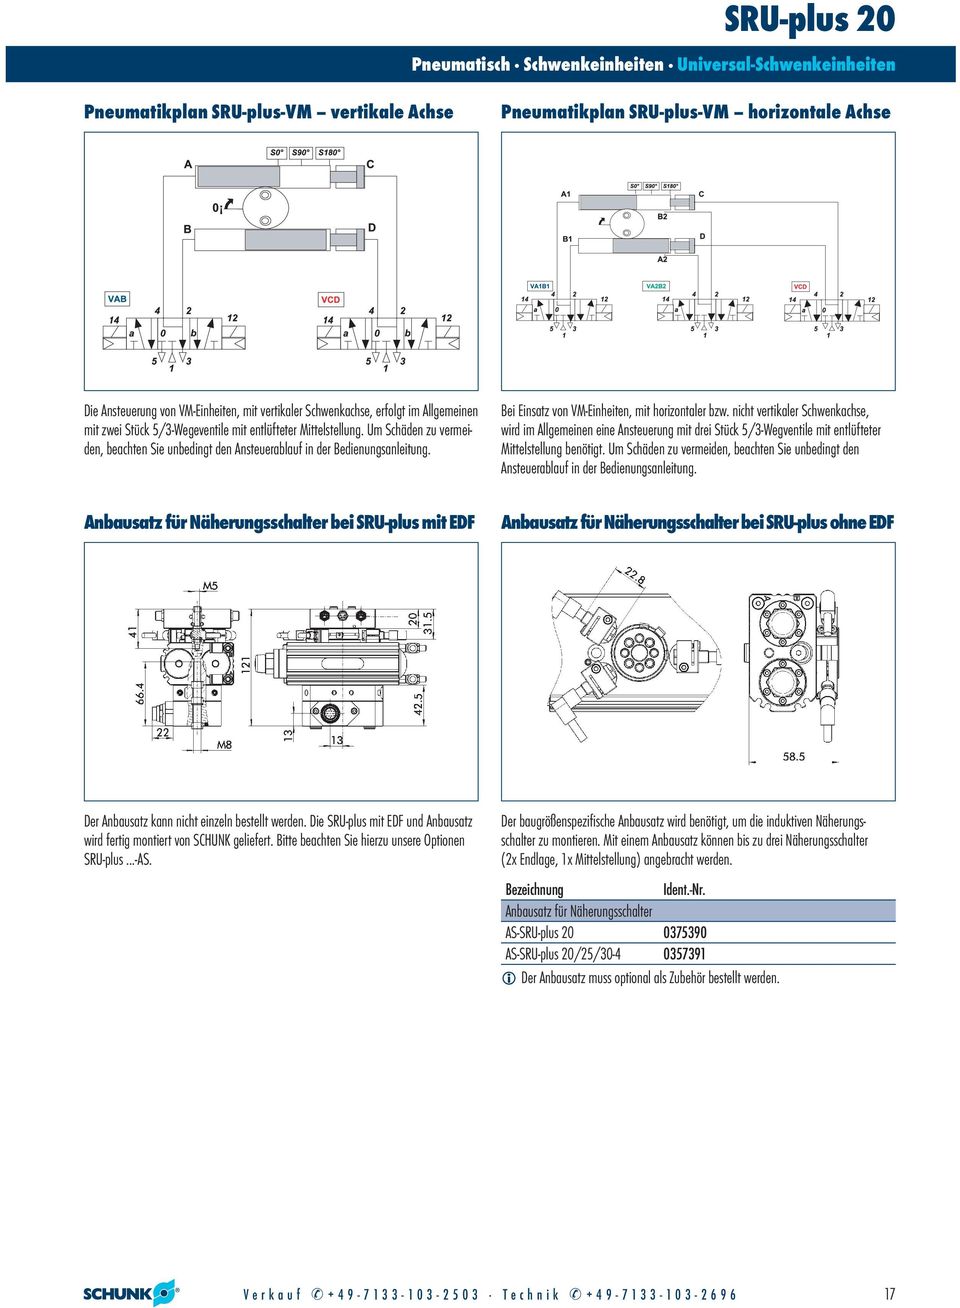 Anbausatz für Näherungsschalter bei SRU-plus mit EDF Bei Einsatz von VM-Einheiten, mit horizontaler bzw.